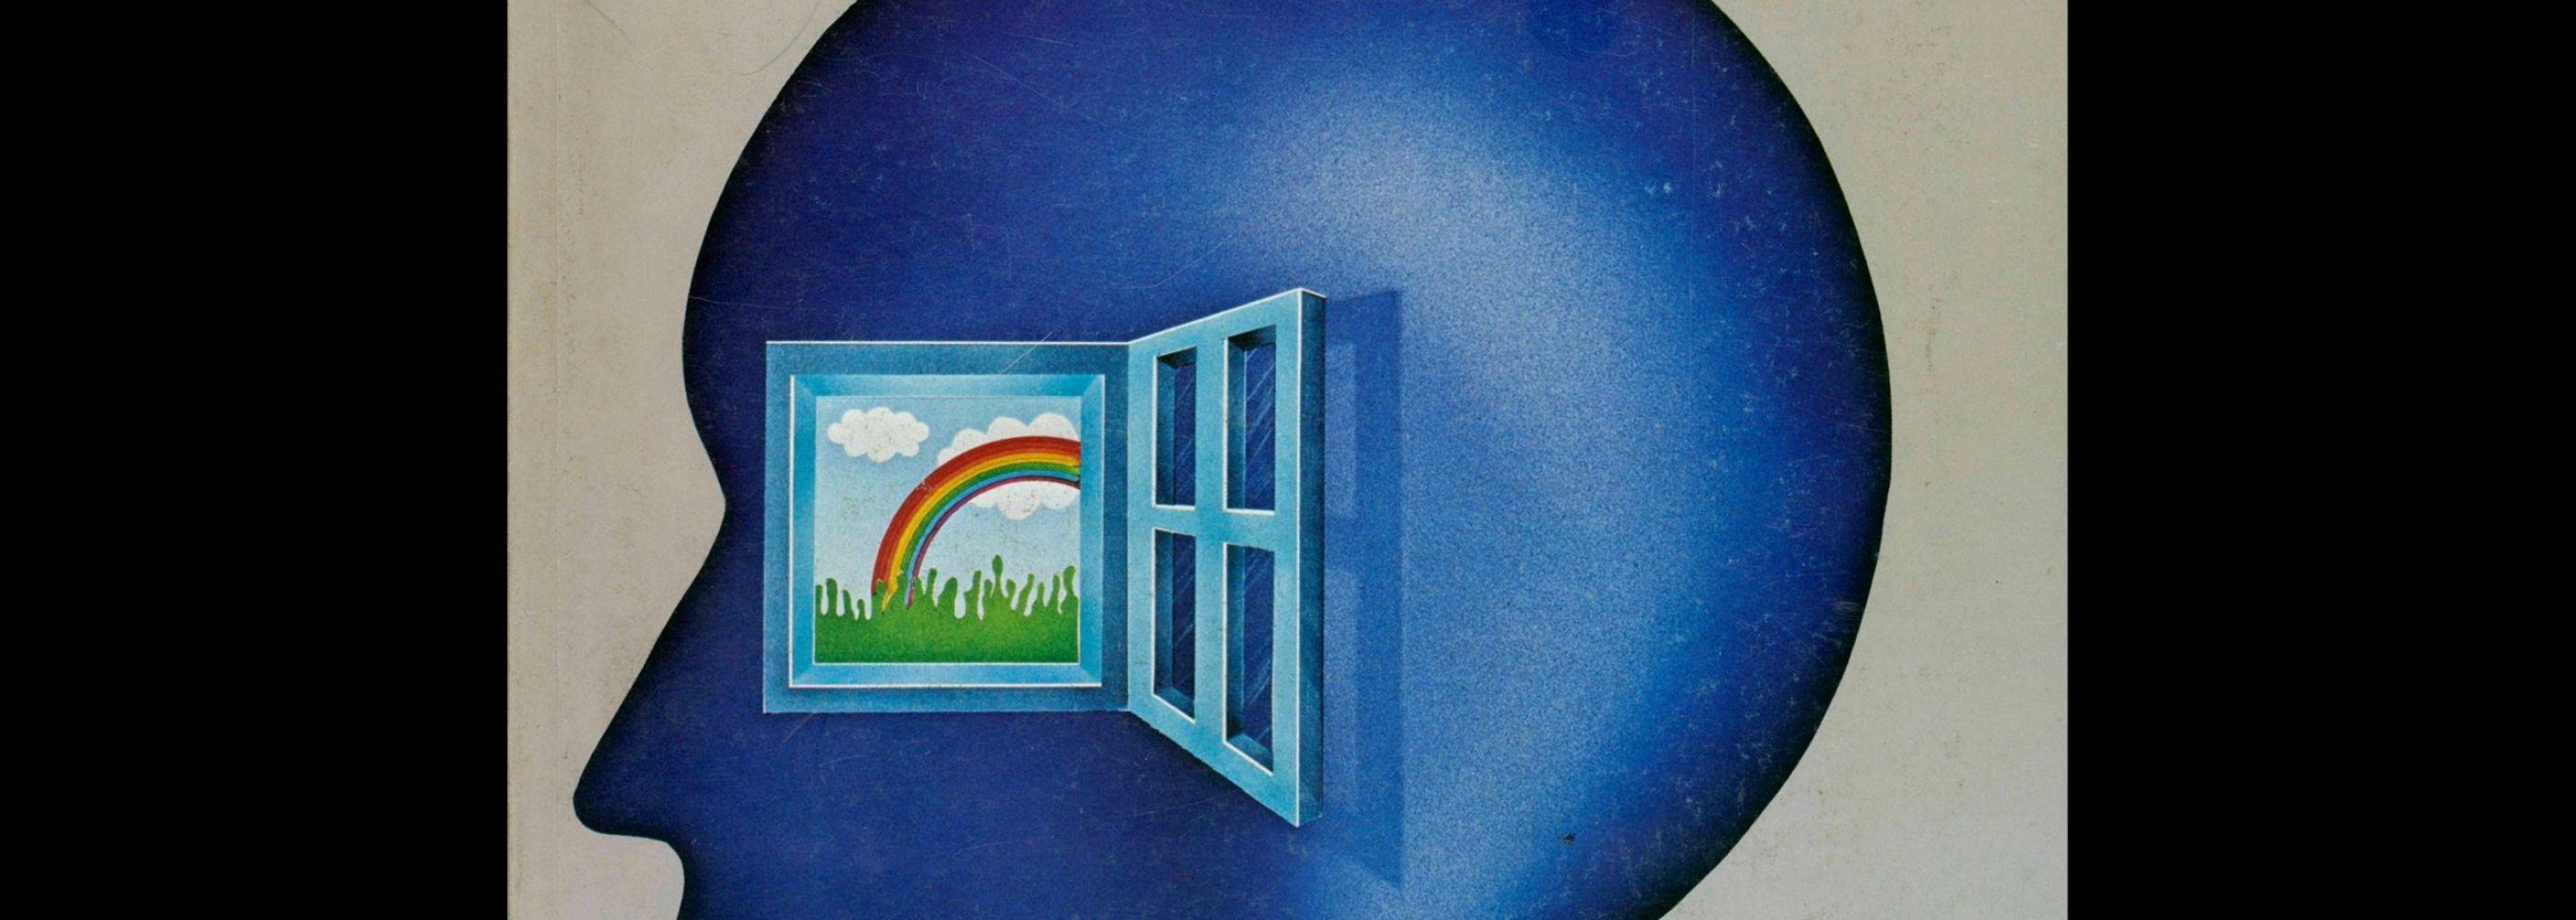 Novum Gebrauchsgraphik, 8, 1979. Cover design by Mira Maroz